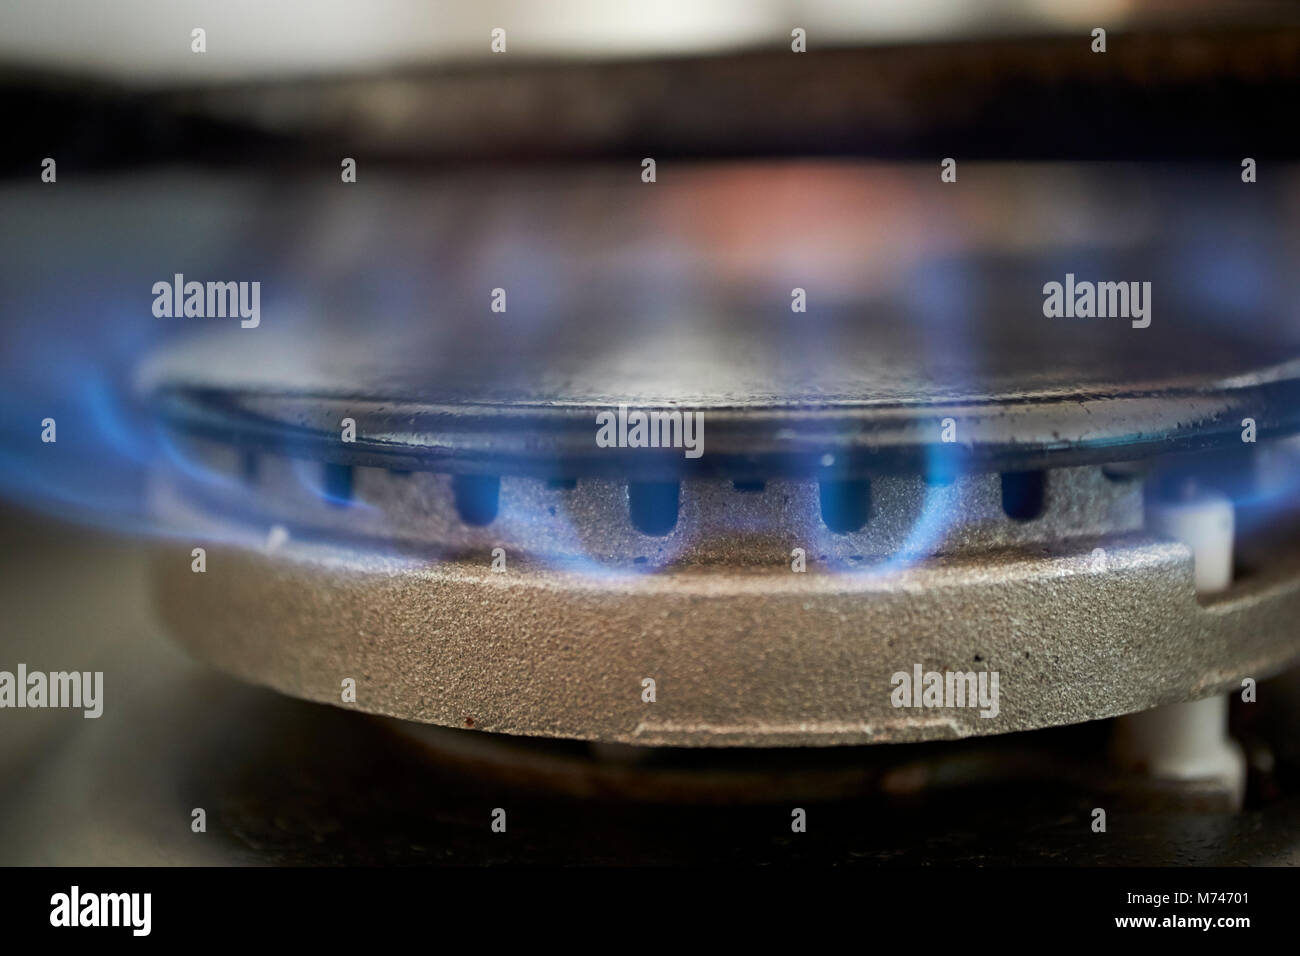 L'anneau de gaz de cuisson à l'aide de gravure sur la cuisine d'alimentation en gaz naturel au Royaume-Uni Banque D'Images